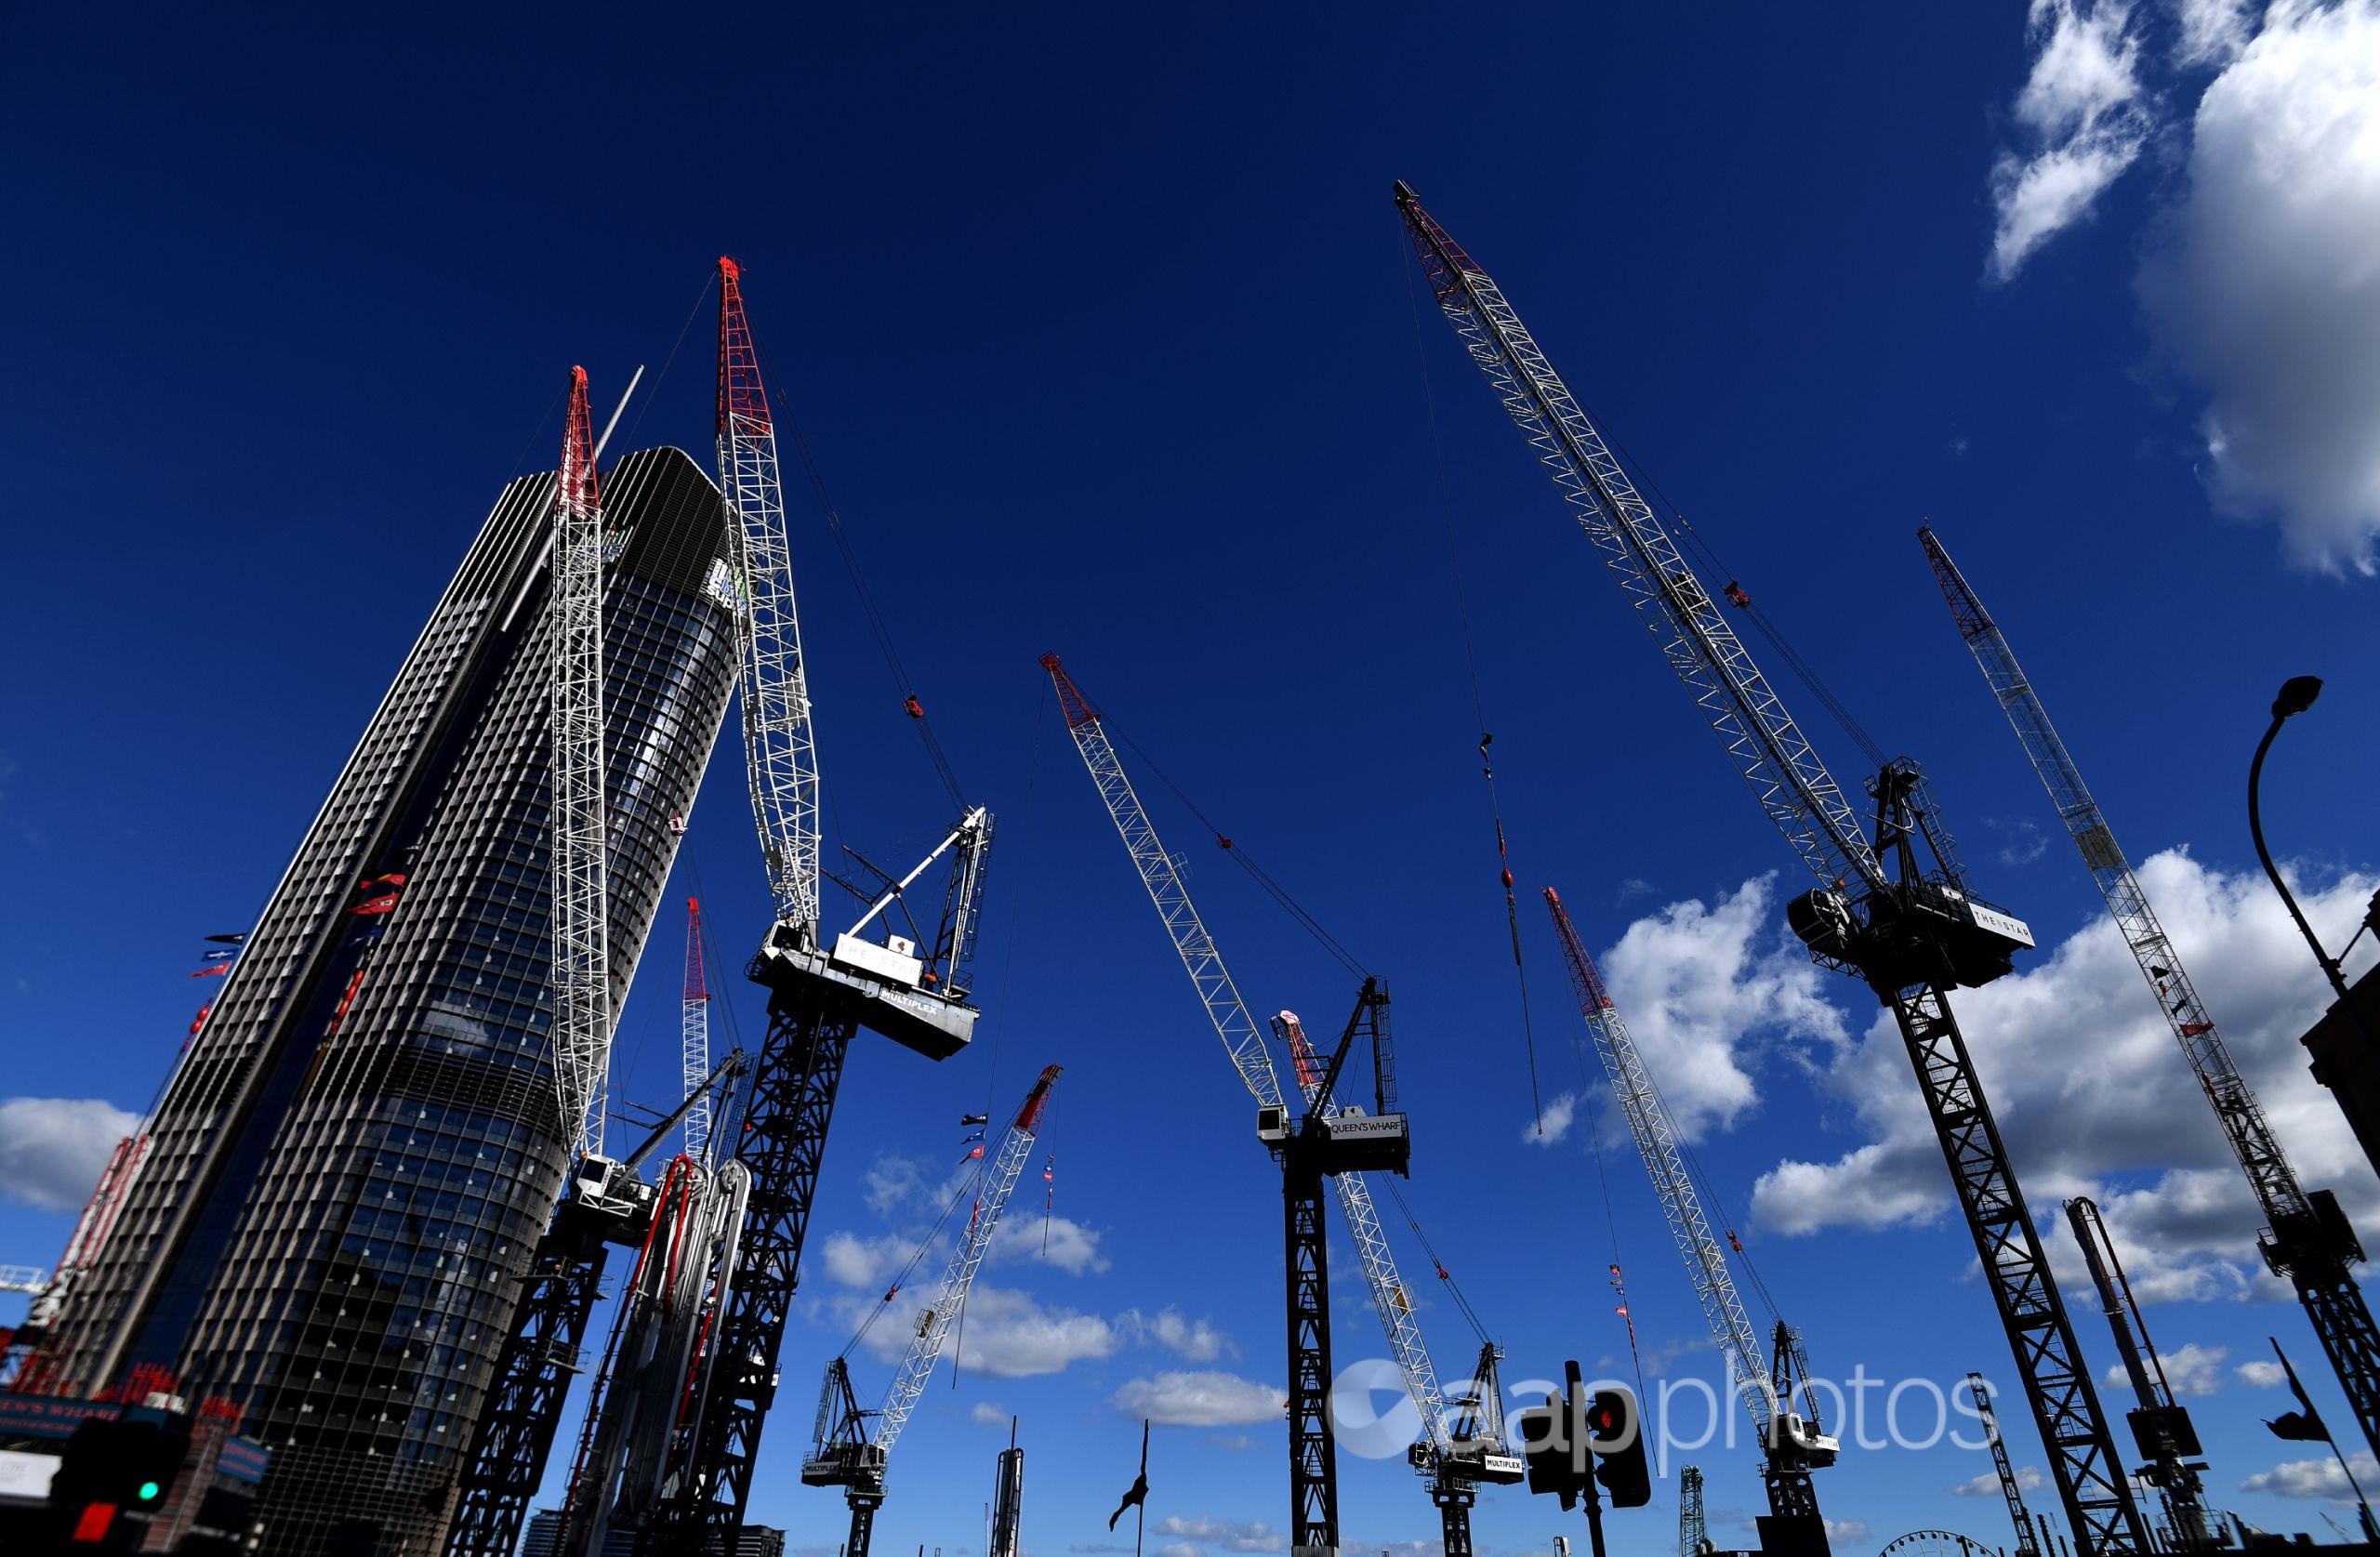 Cranes against a blue sky